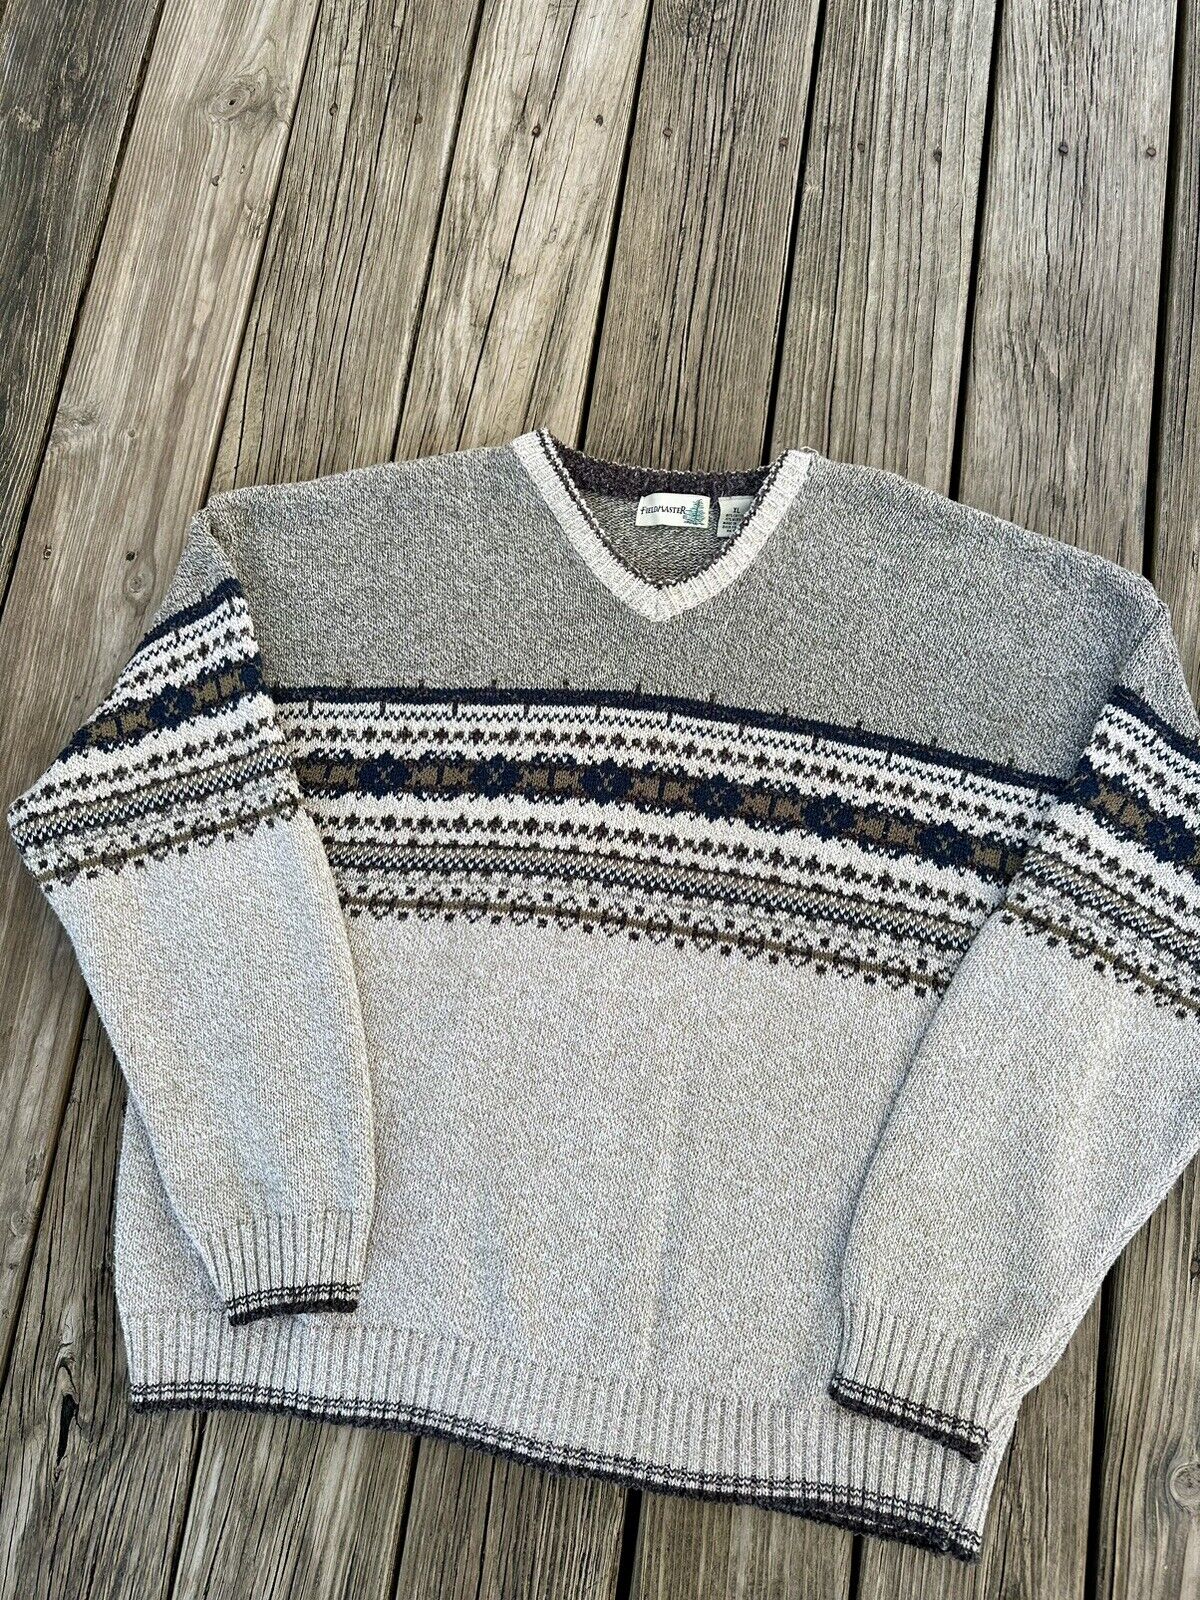 Vintage Fieldmaster Sweater - image 2